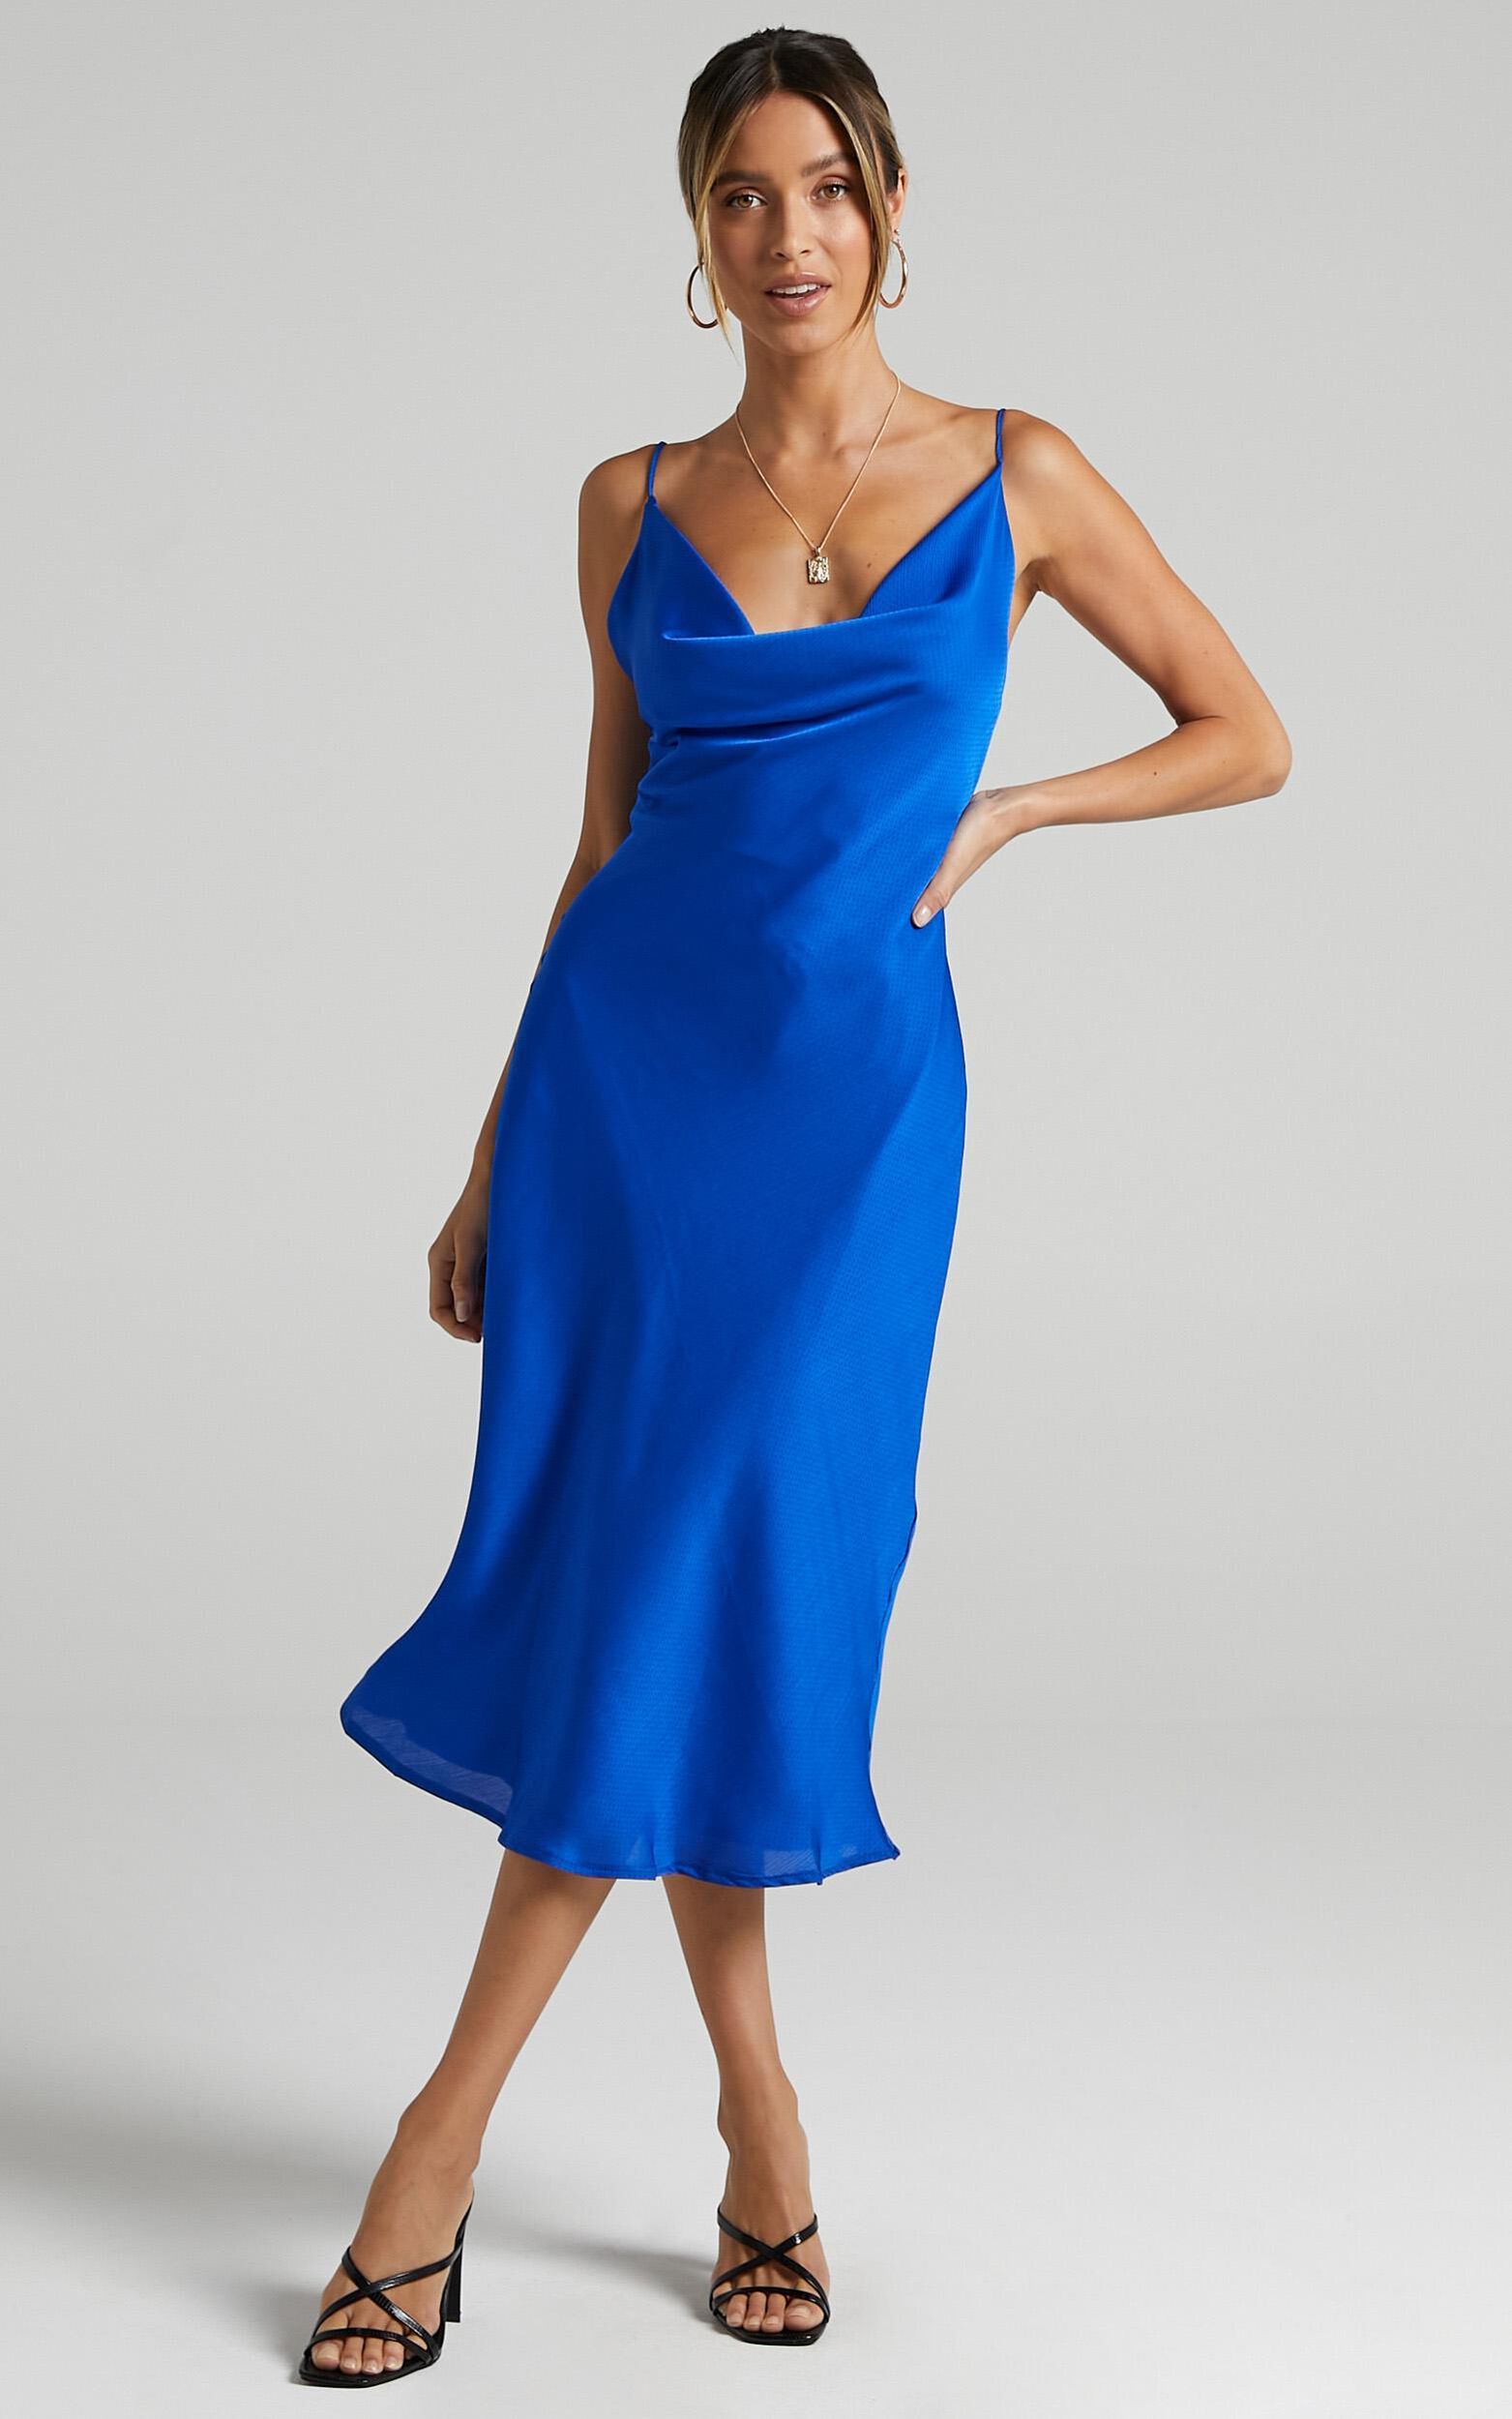 Malmuira Dress in Cobalt Satin | Showpo